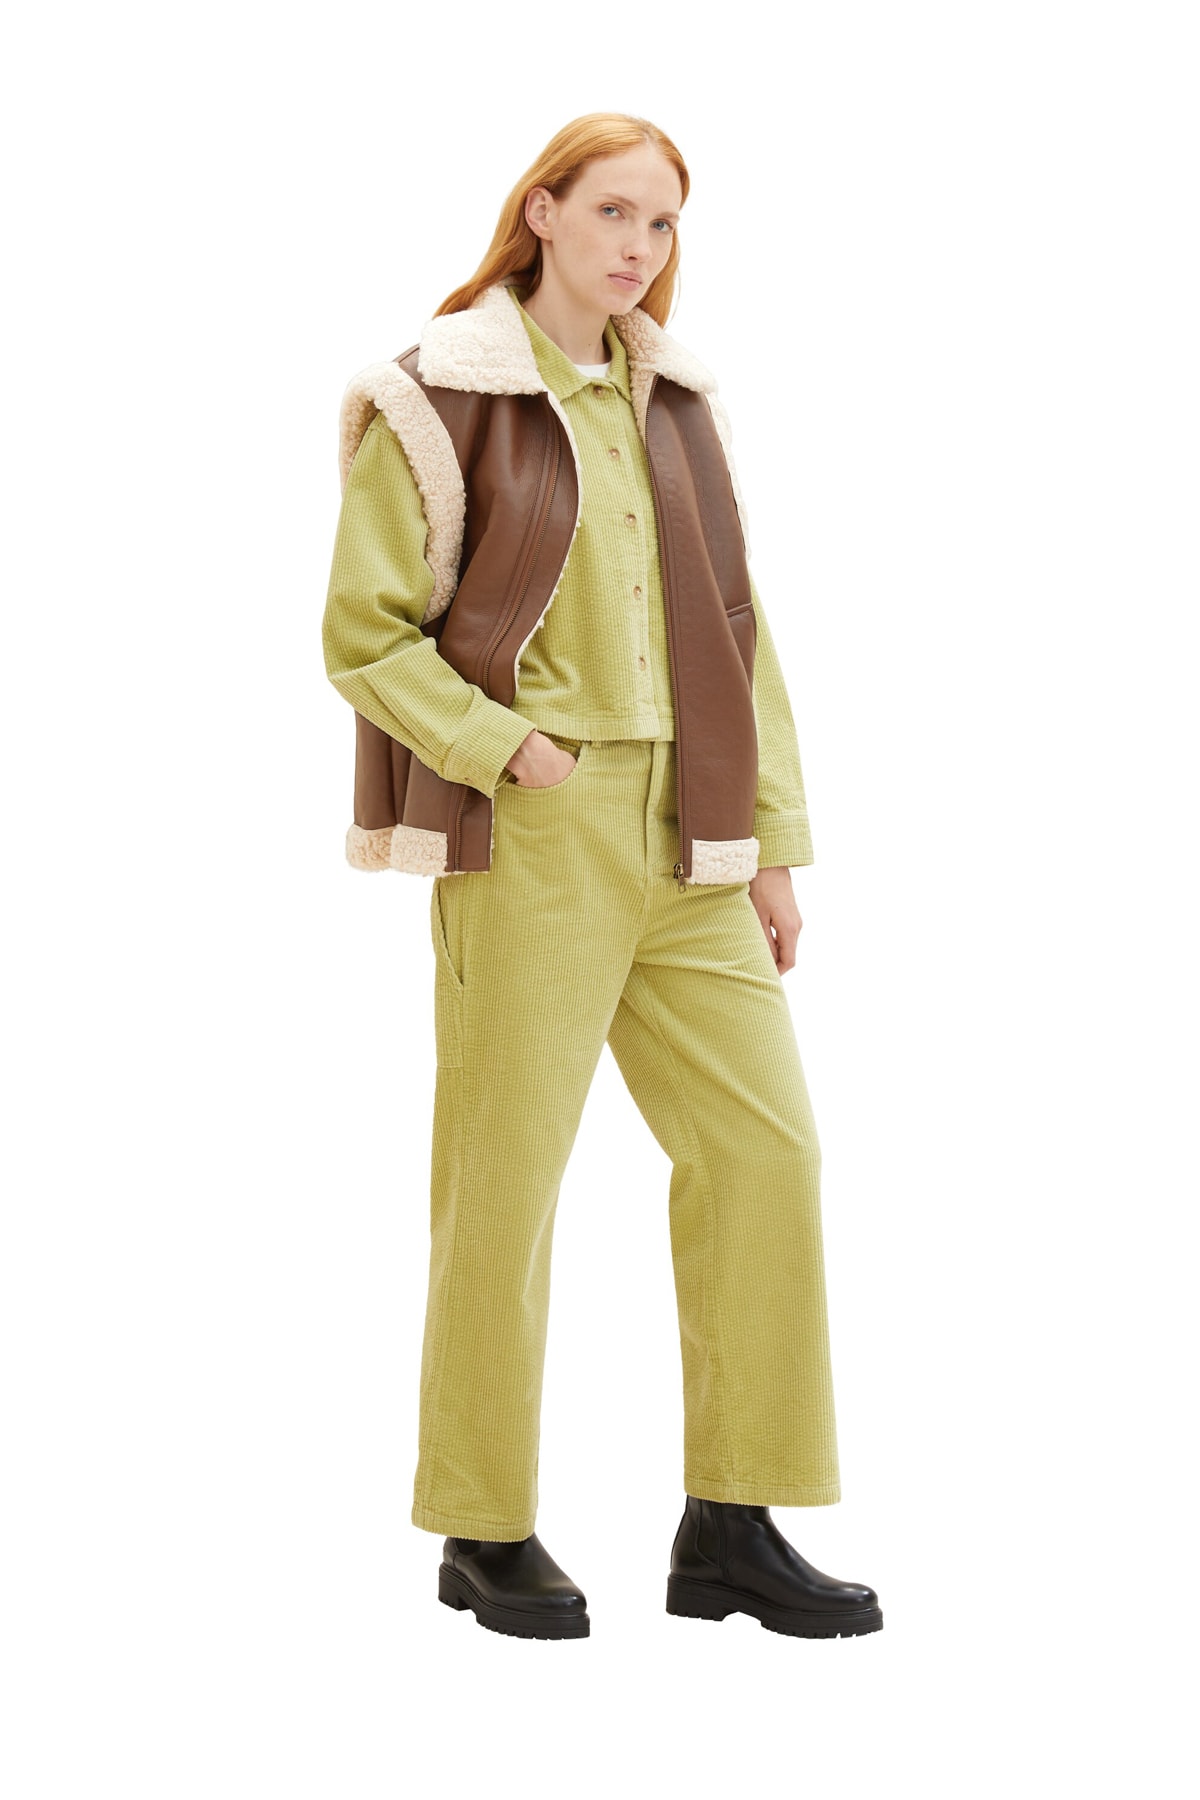 Брюки Женские/Девочки шнуровые брюки Carpender Tom Tailor Denim, оранжевый толстовка tom tailor размер xxl оранжевый